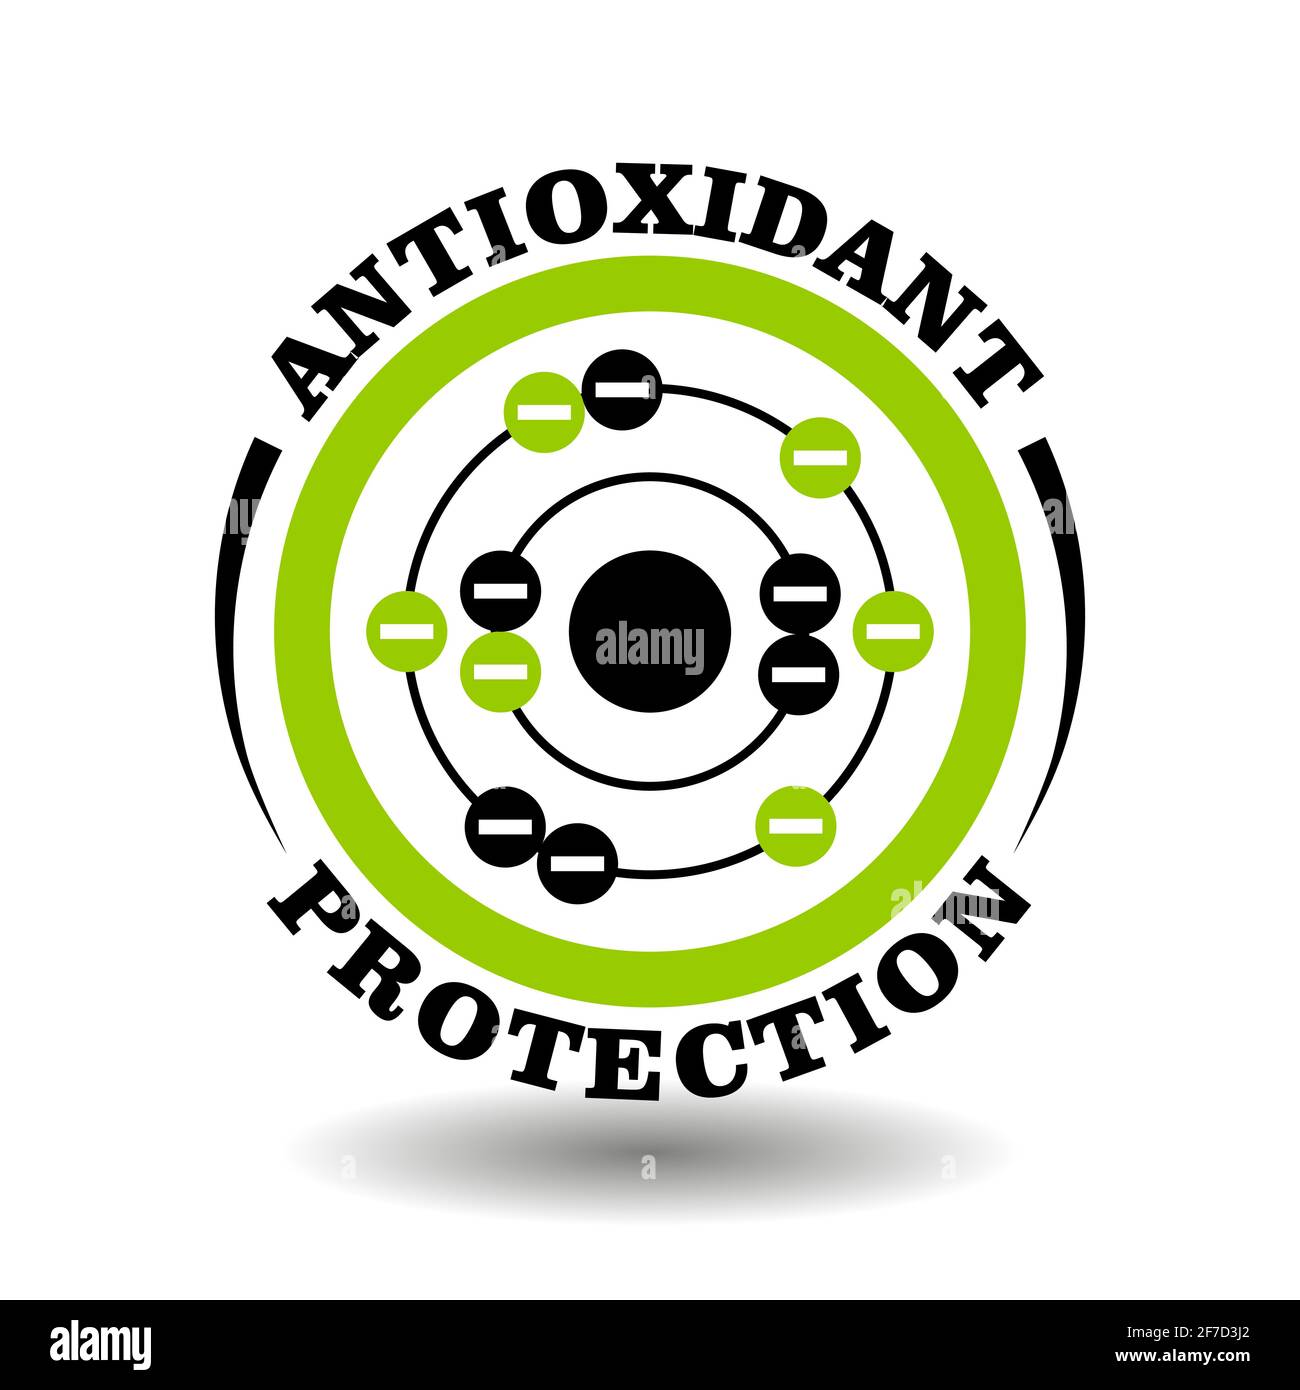 Cercle vecteur icône antioxydant protection avec symbole de molécule protège la cellule contre les signes d'électrons radicaux libres. Cosmétiques naturels biologiques et médicaux Illustration de Vecteur